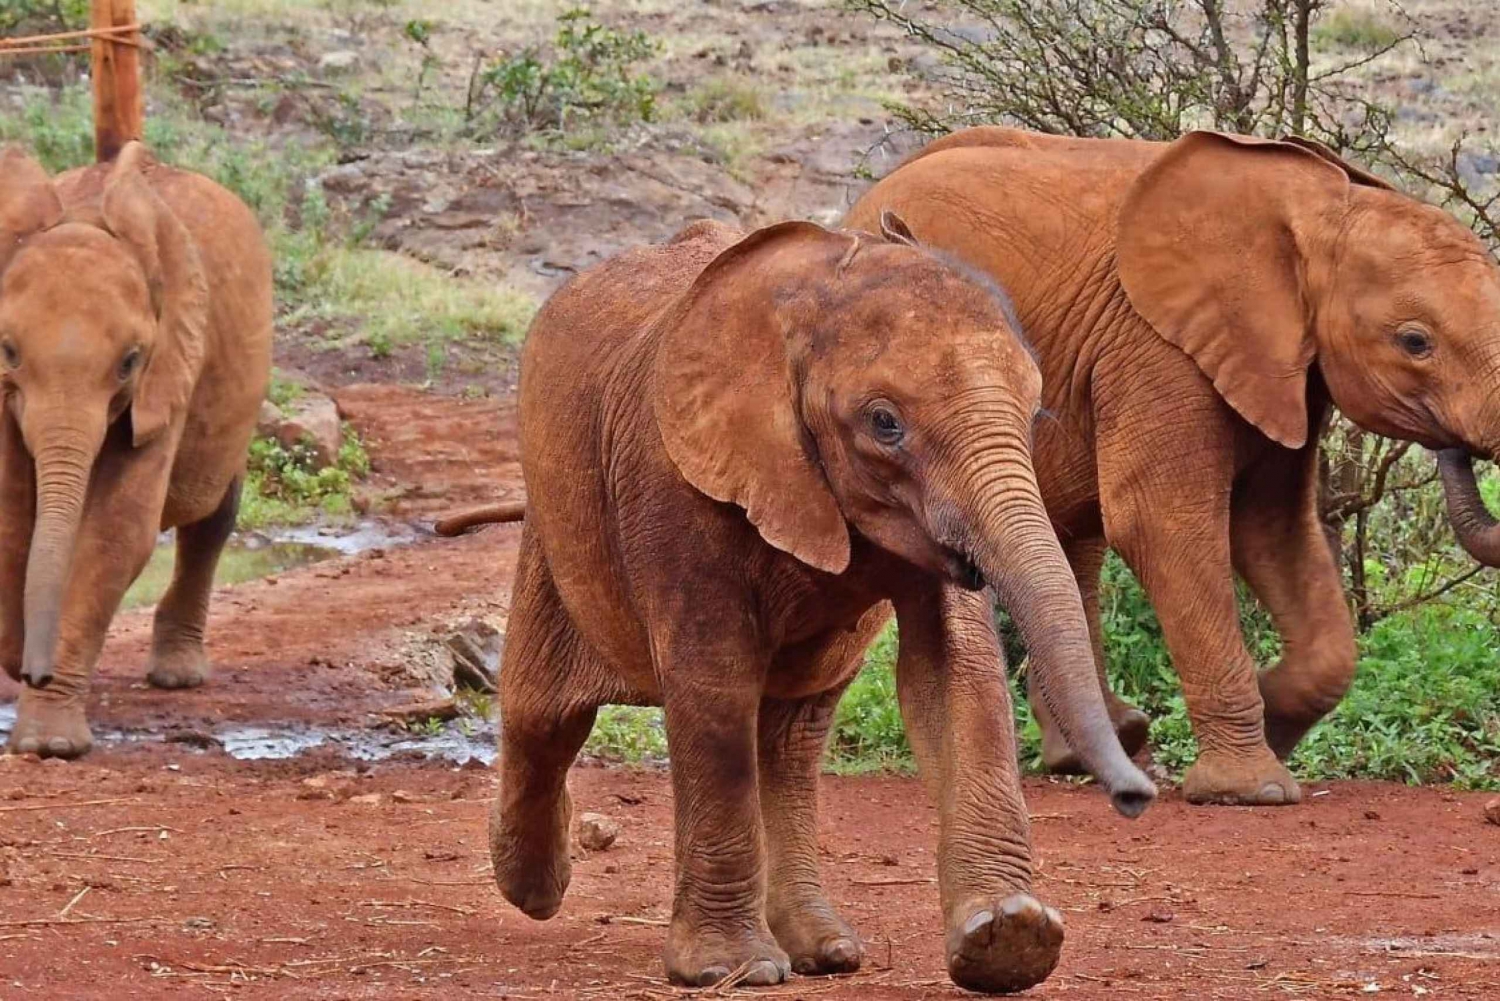 Bebé elefante, bebé rinoceronte y las graciosas jirafas Rothschild